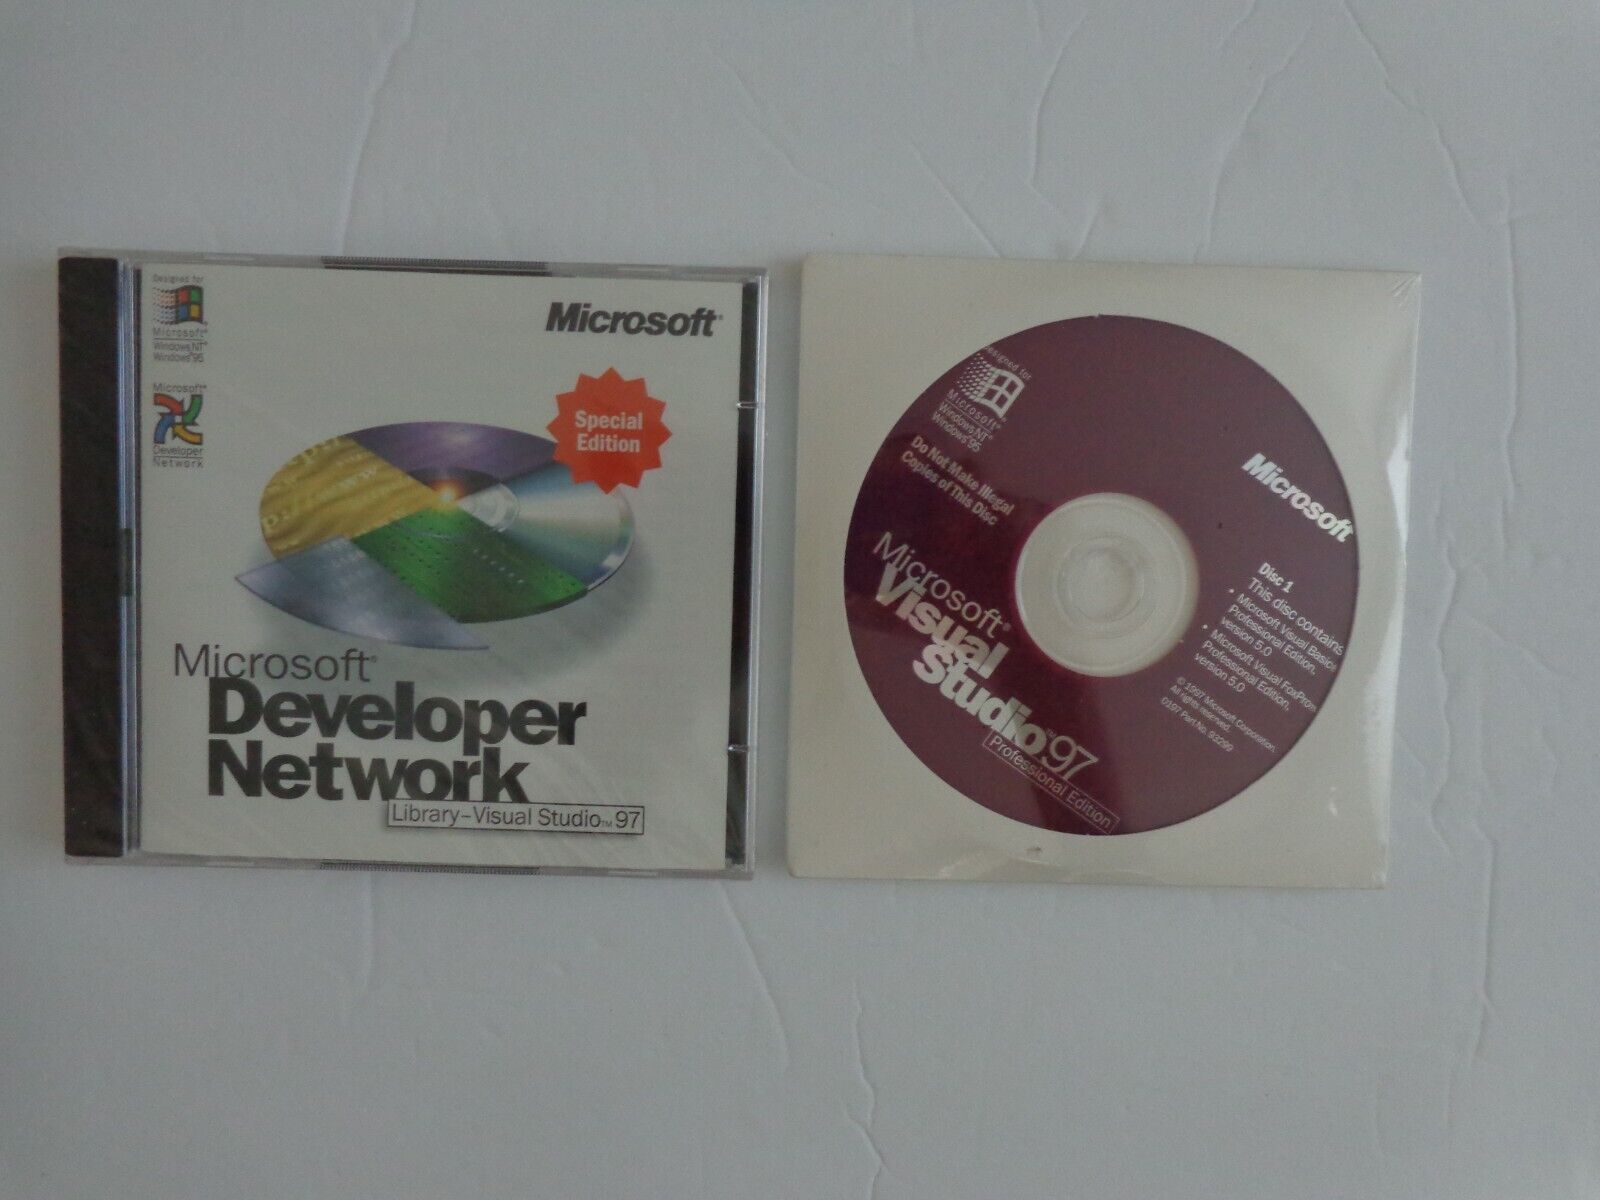 Microsoft Visual Studio Pro 97 With Developer Network Library Visual Studio 97